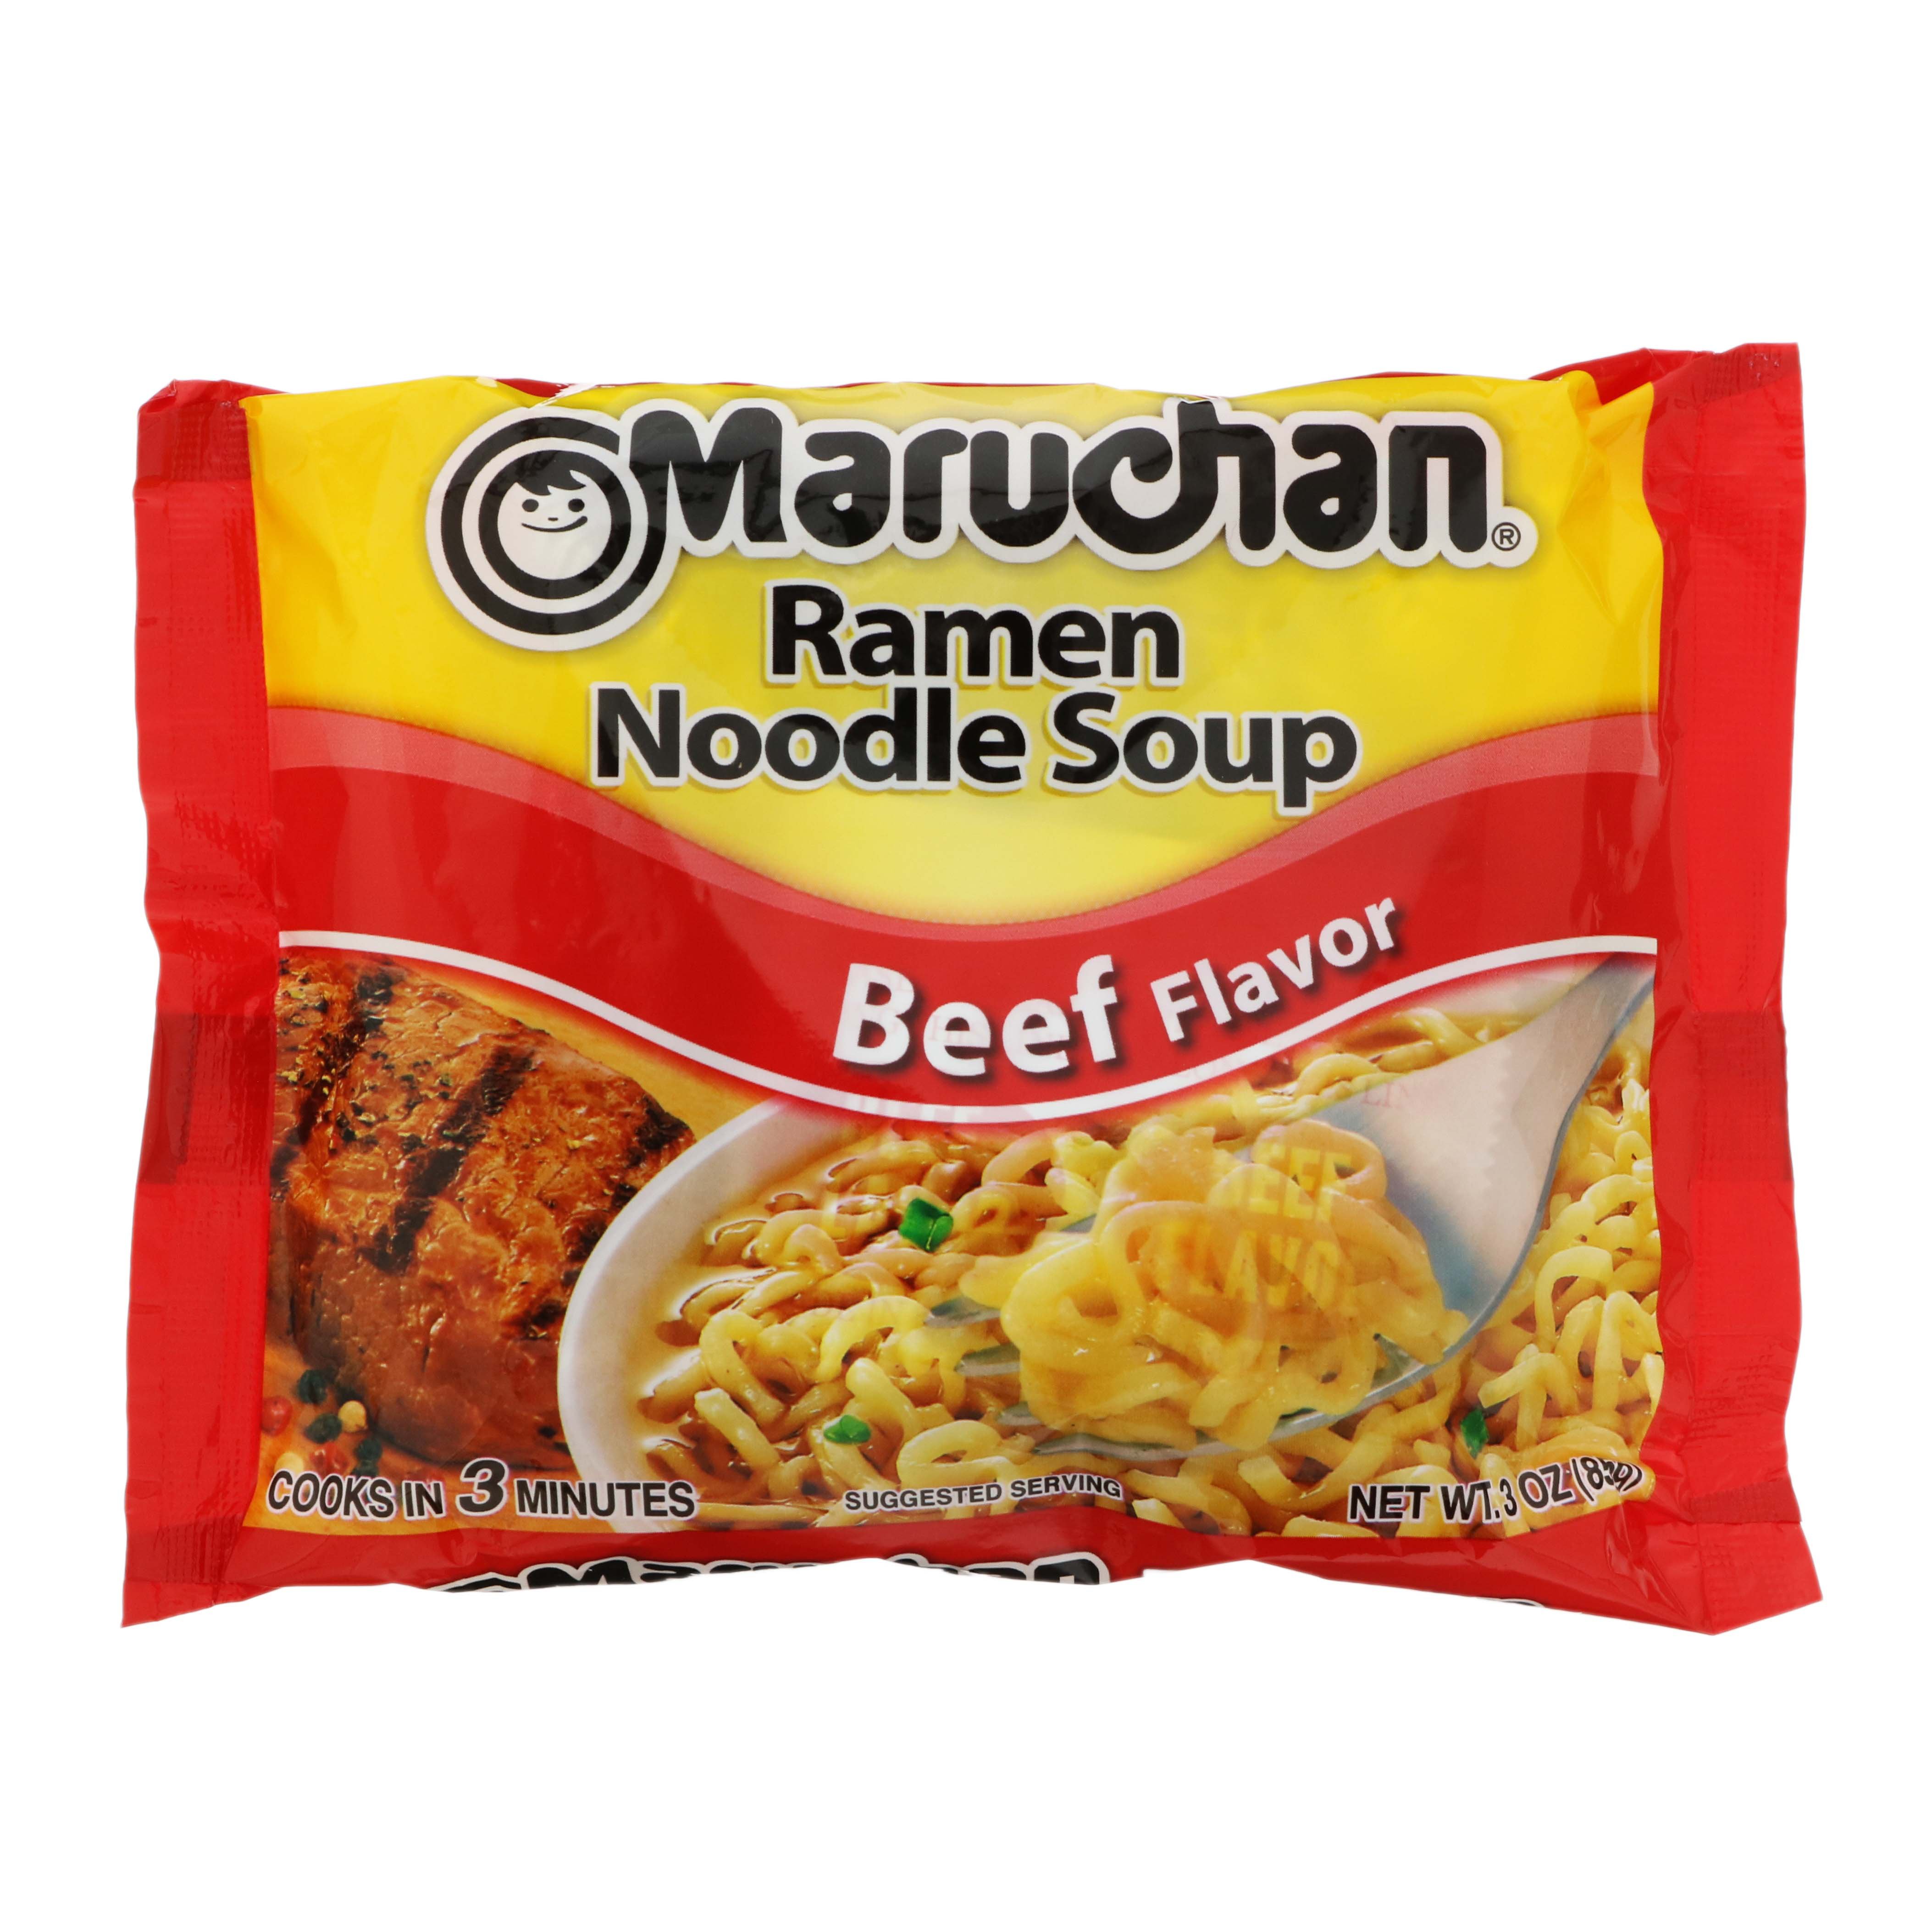 Maruchan Flavor Ramen Noodle Soup - Soups & Chili at H-E-B